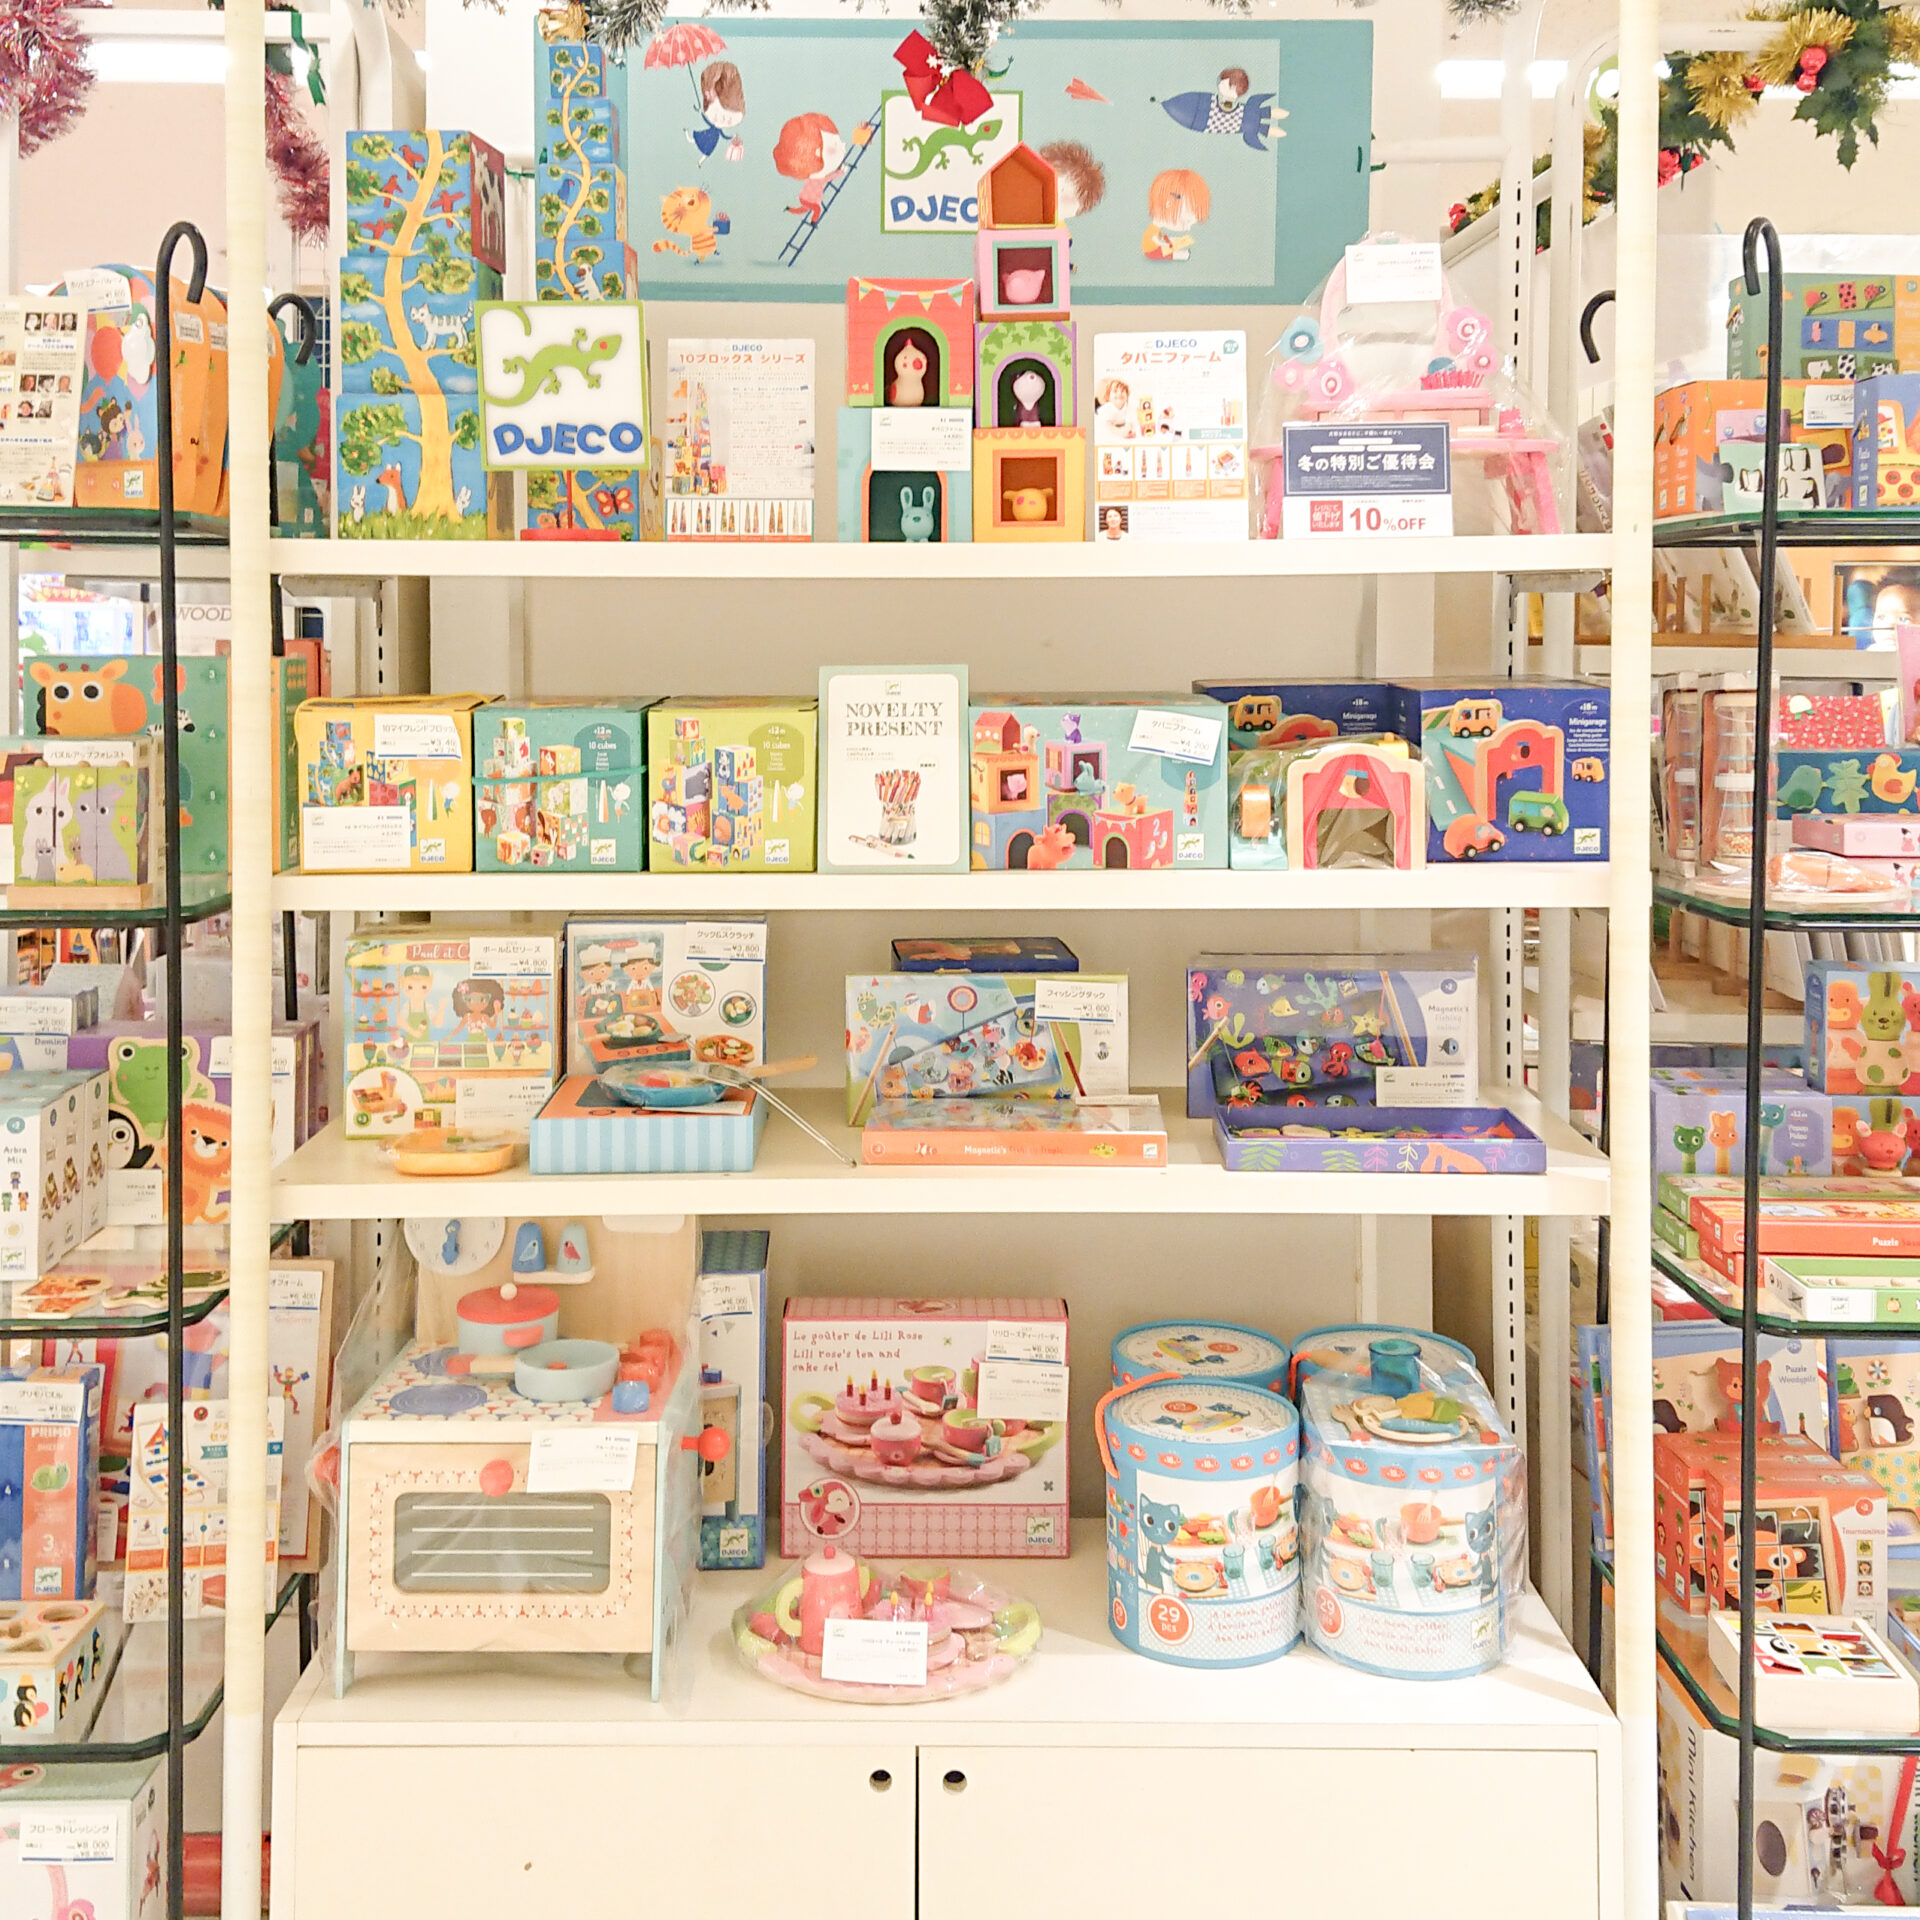 埼玉県にあるそごう大宮店のDJECOクリスマスフェアの店頭の様子です。白い棚に、おままごとや紙製積み木などのおもちゃ、黒い棚にはパズルやオルゴールなどが並んでいます。